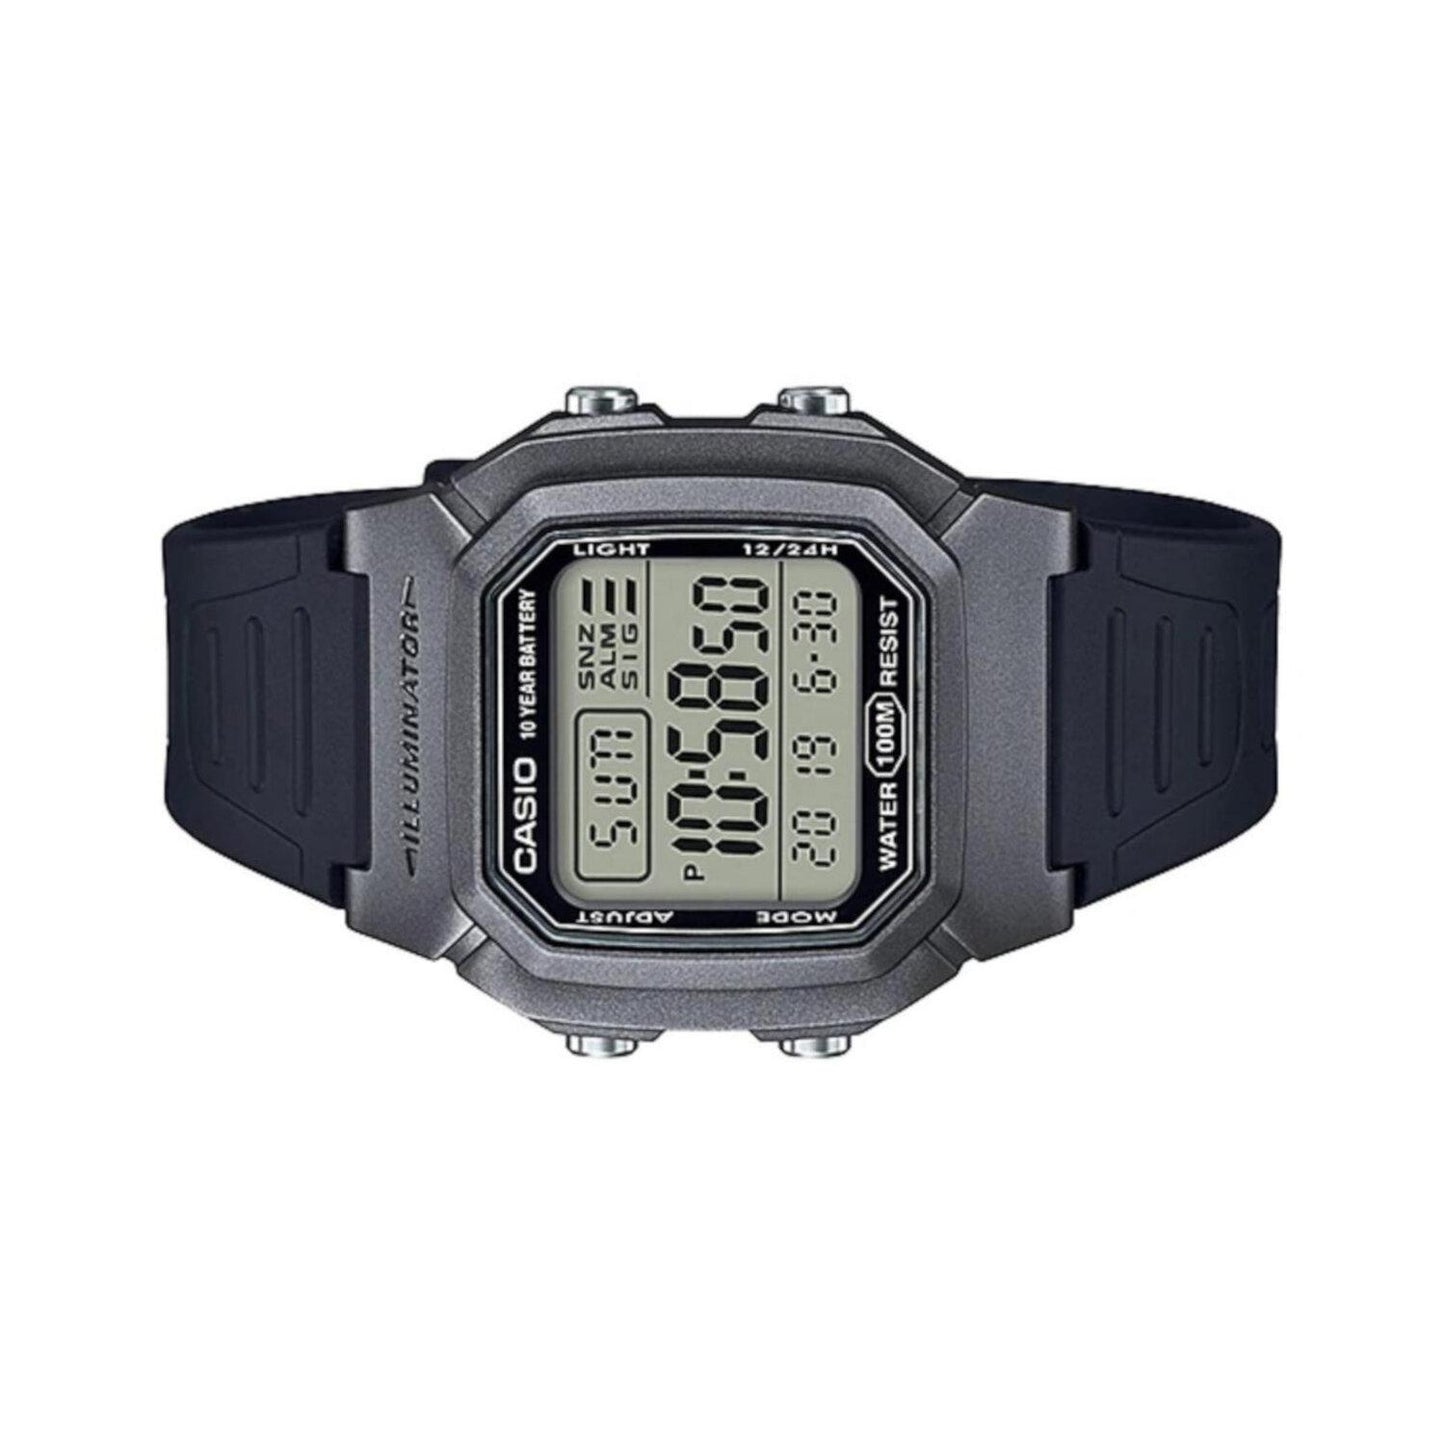 Reloj CASIO W-800HM-7AVCF Illuminator Retro Dual Time(Doble Hora)-Negro